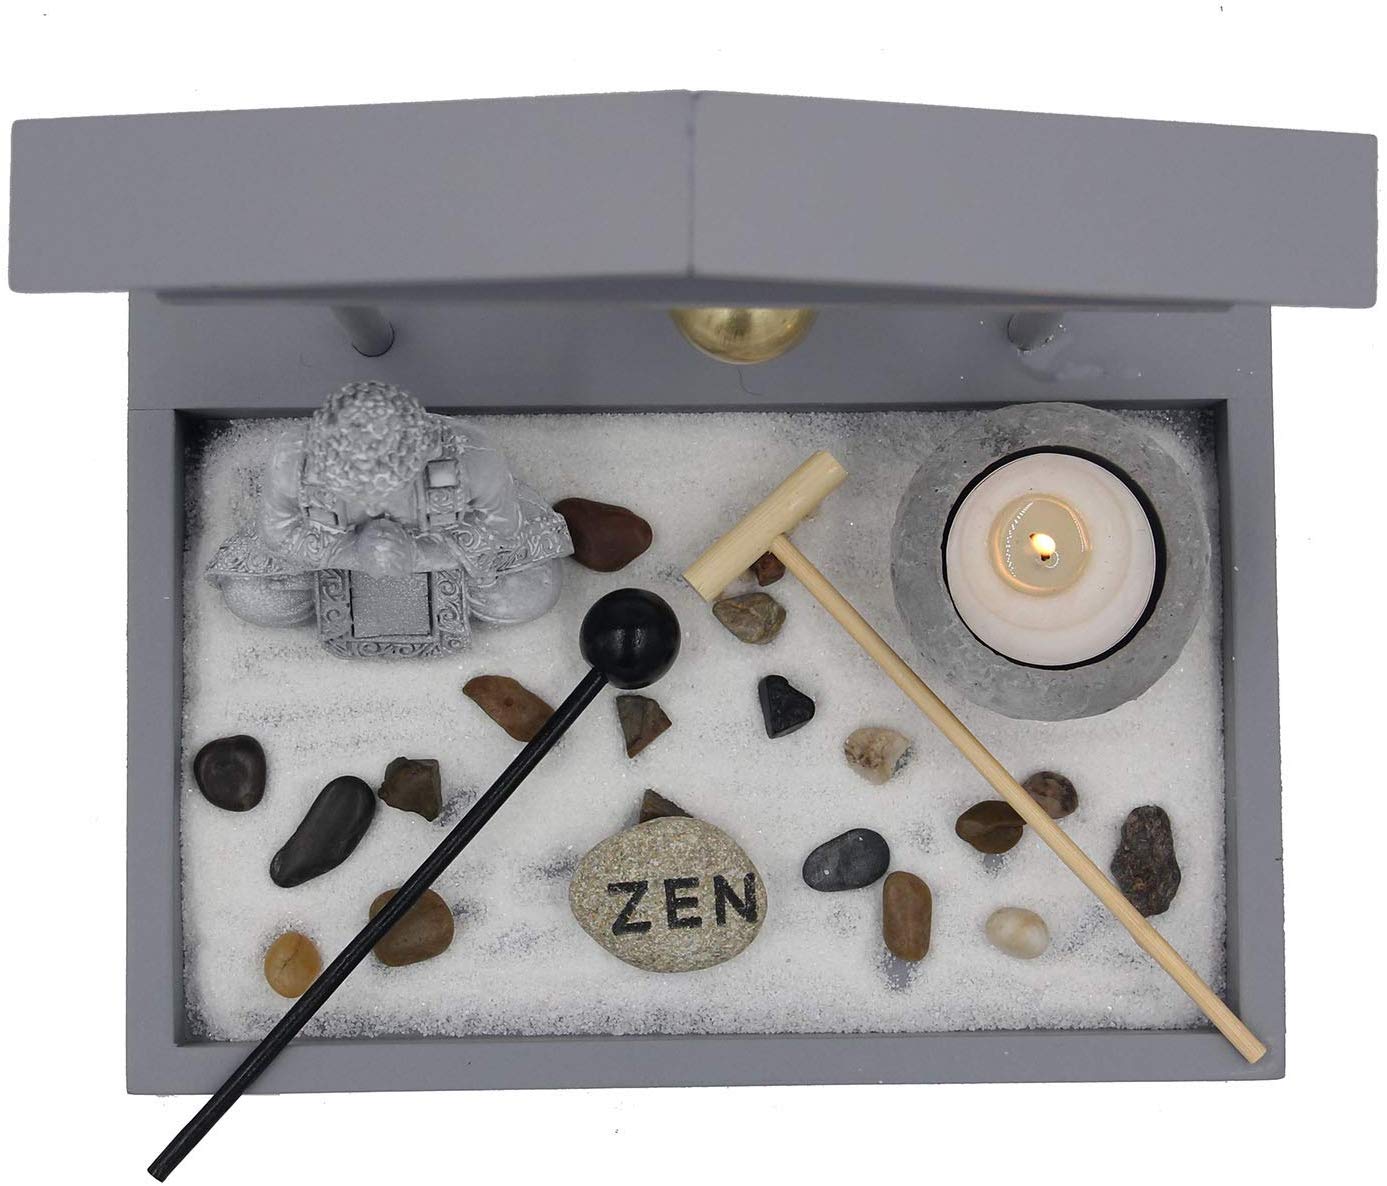 Buddha Zen Garden Tea Light Candle Holder Set (Gray Bell Buddha) - DharmaObjects